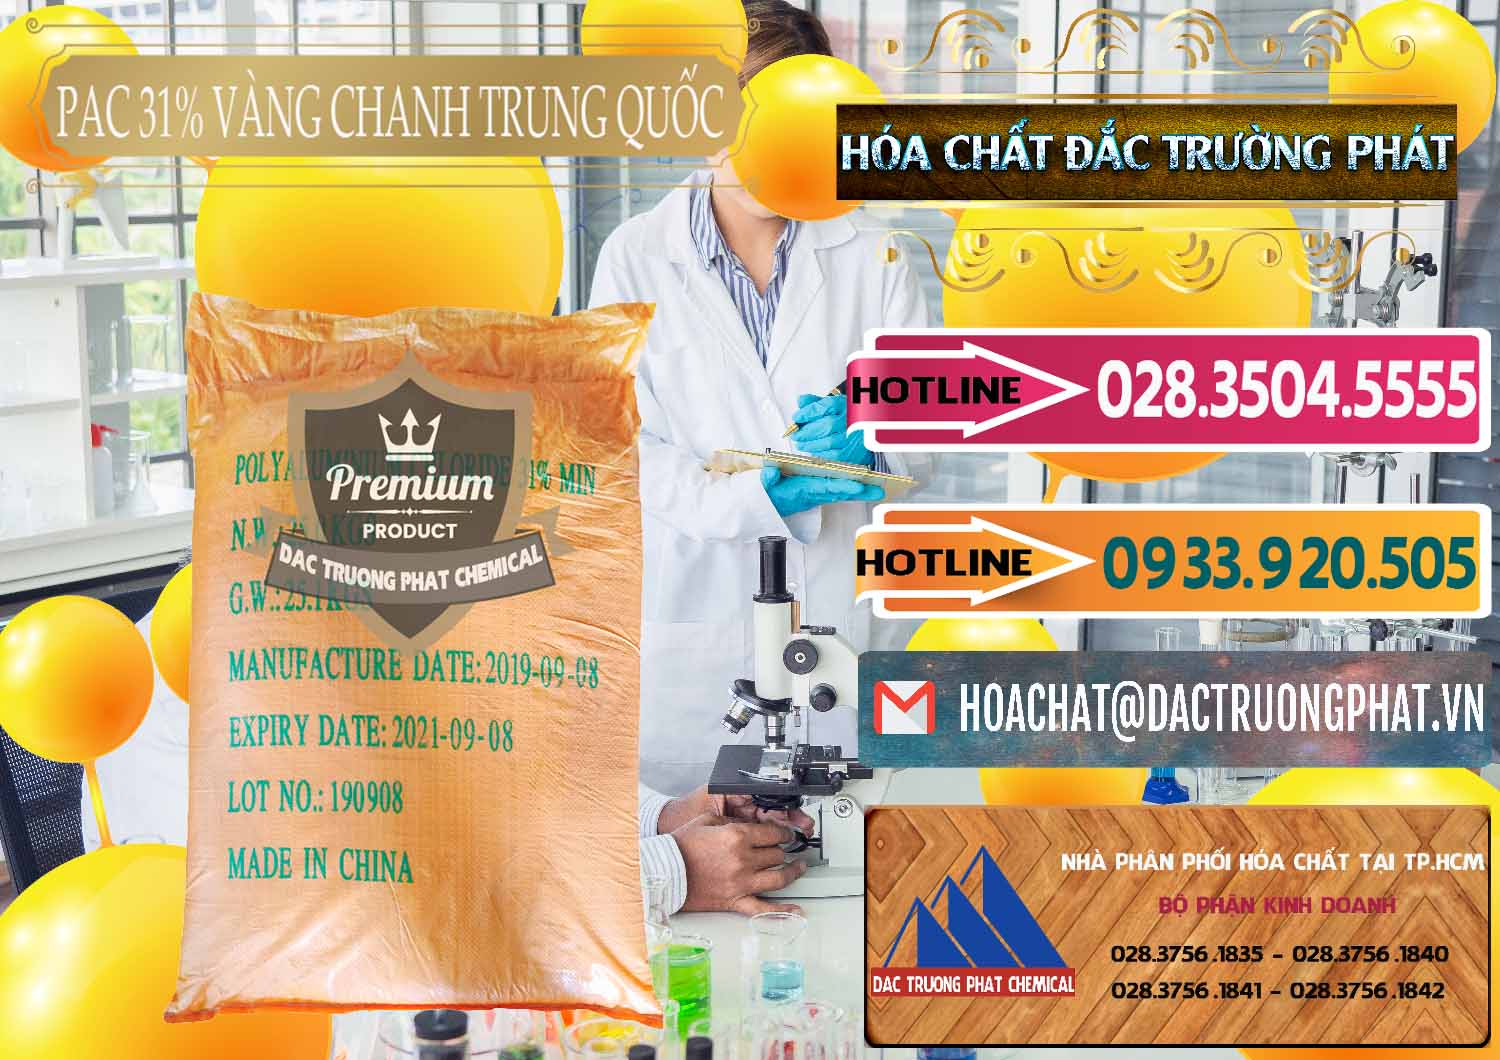 Đơn vị bán ( cung ứng ) PAC - Polyaluminium Chloride 28-31% Vàng Chanh Trung Quốc China - 0109 - Phân phối ( cung cấp ) hóa chất tại TP.HCM - dactruongphat.vn